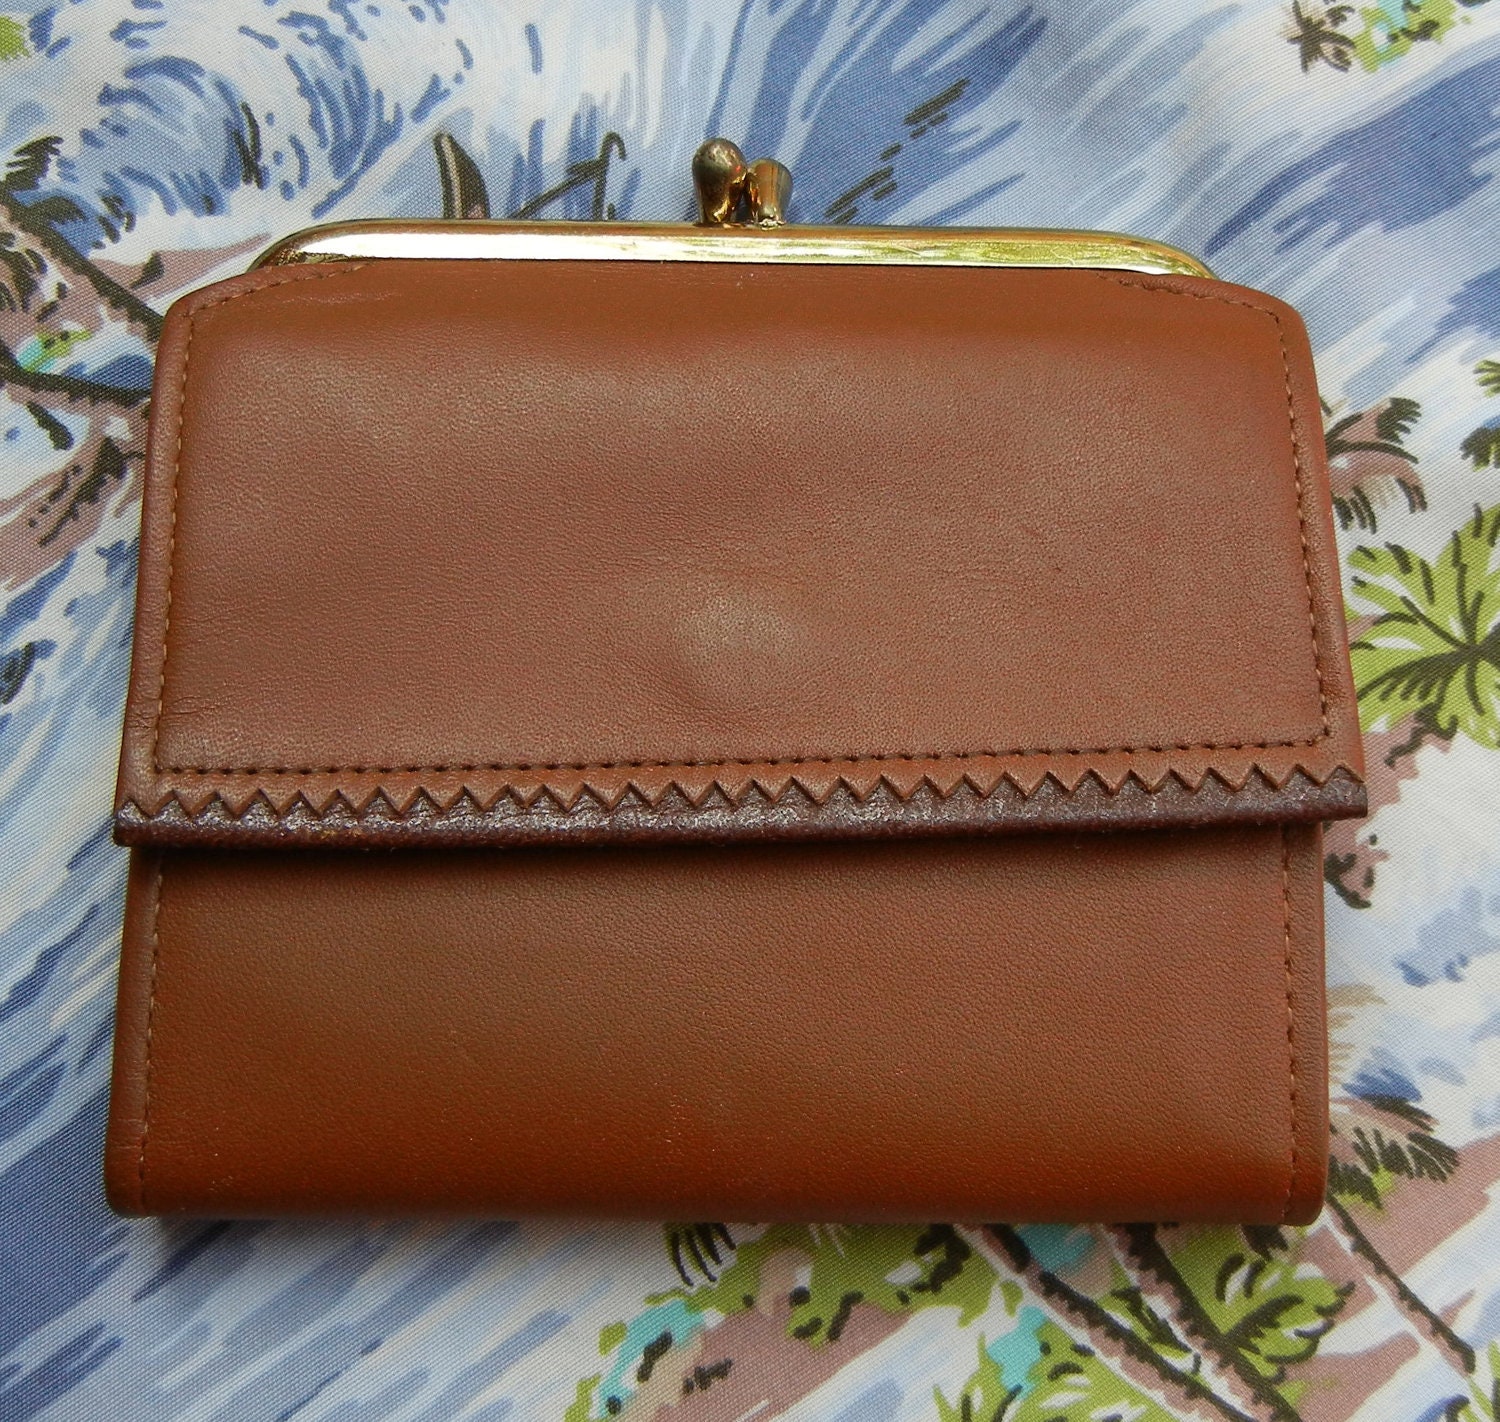 V I N T A G E Princess Gardner leather wallet by PoshRockVintage